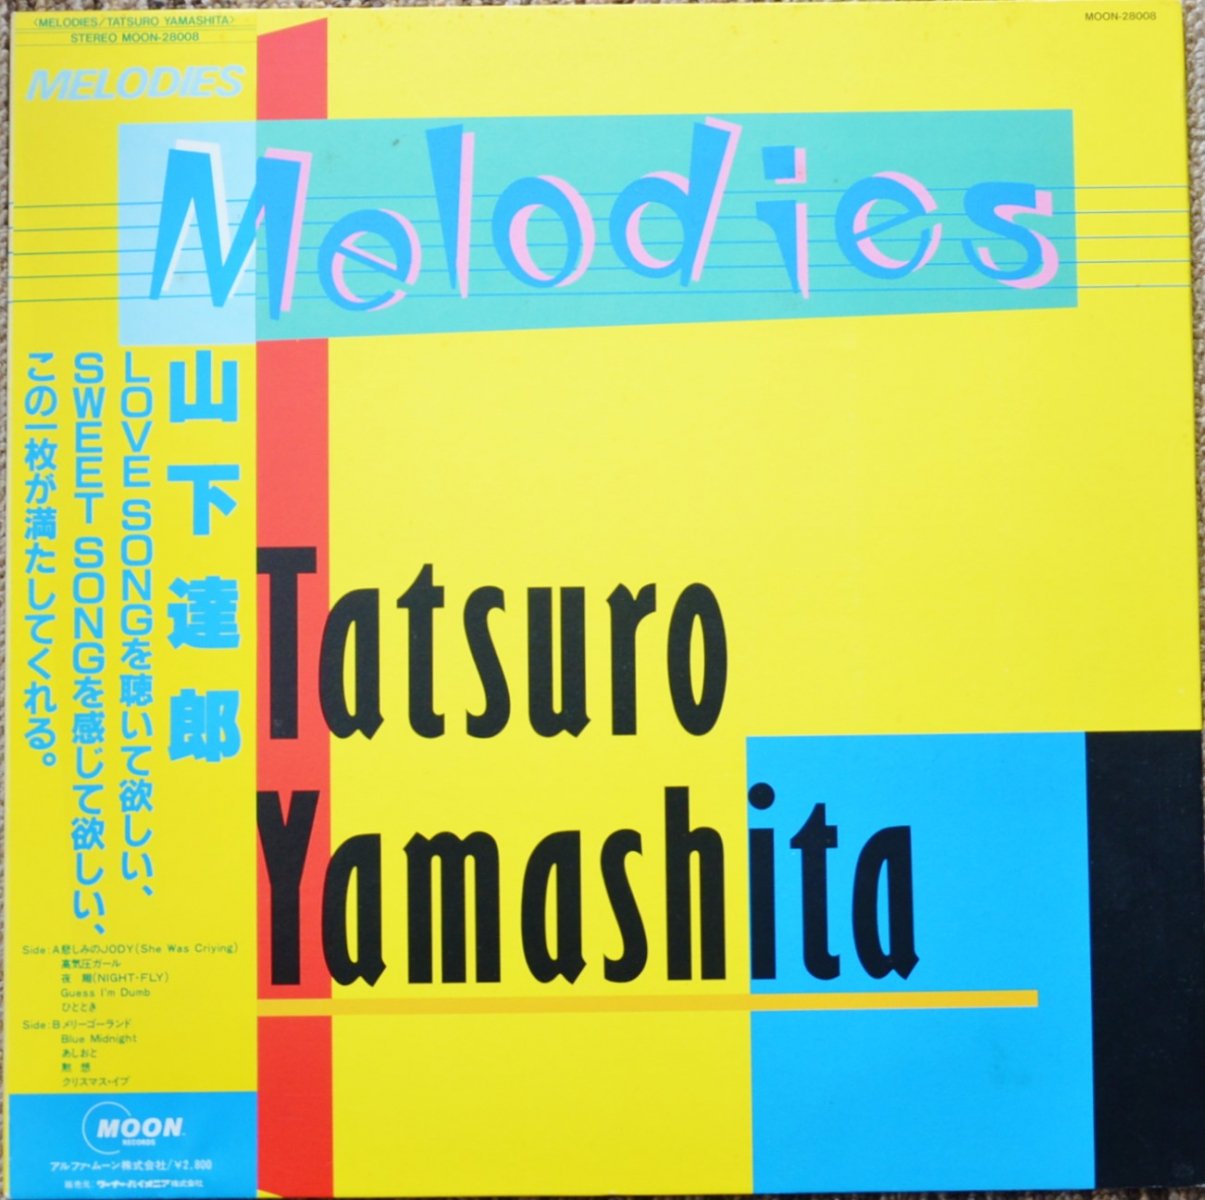 山下達郎 TATSURO YAMASHITA / メロディーズ MELODIES (LP) - HIP TANK